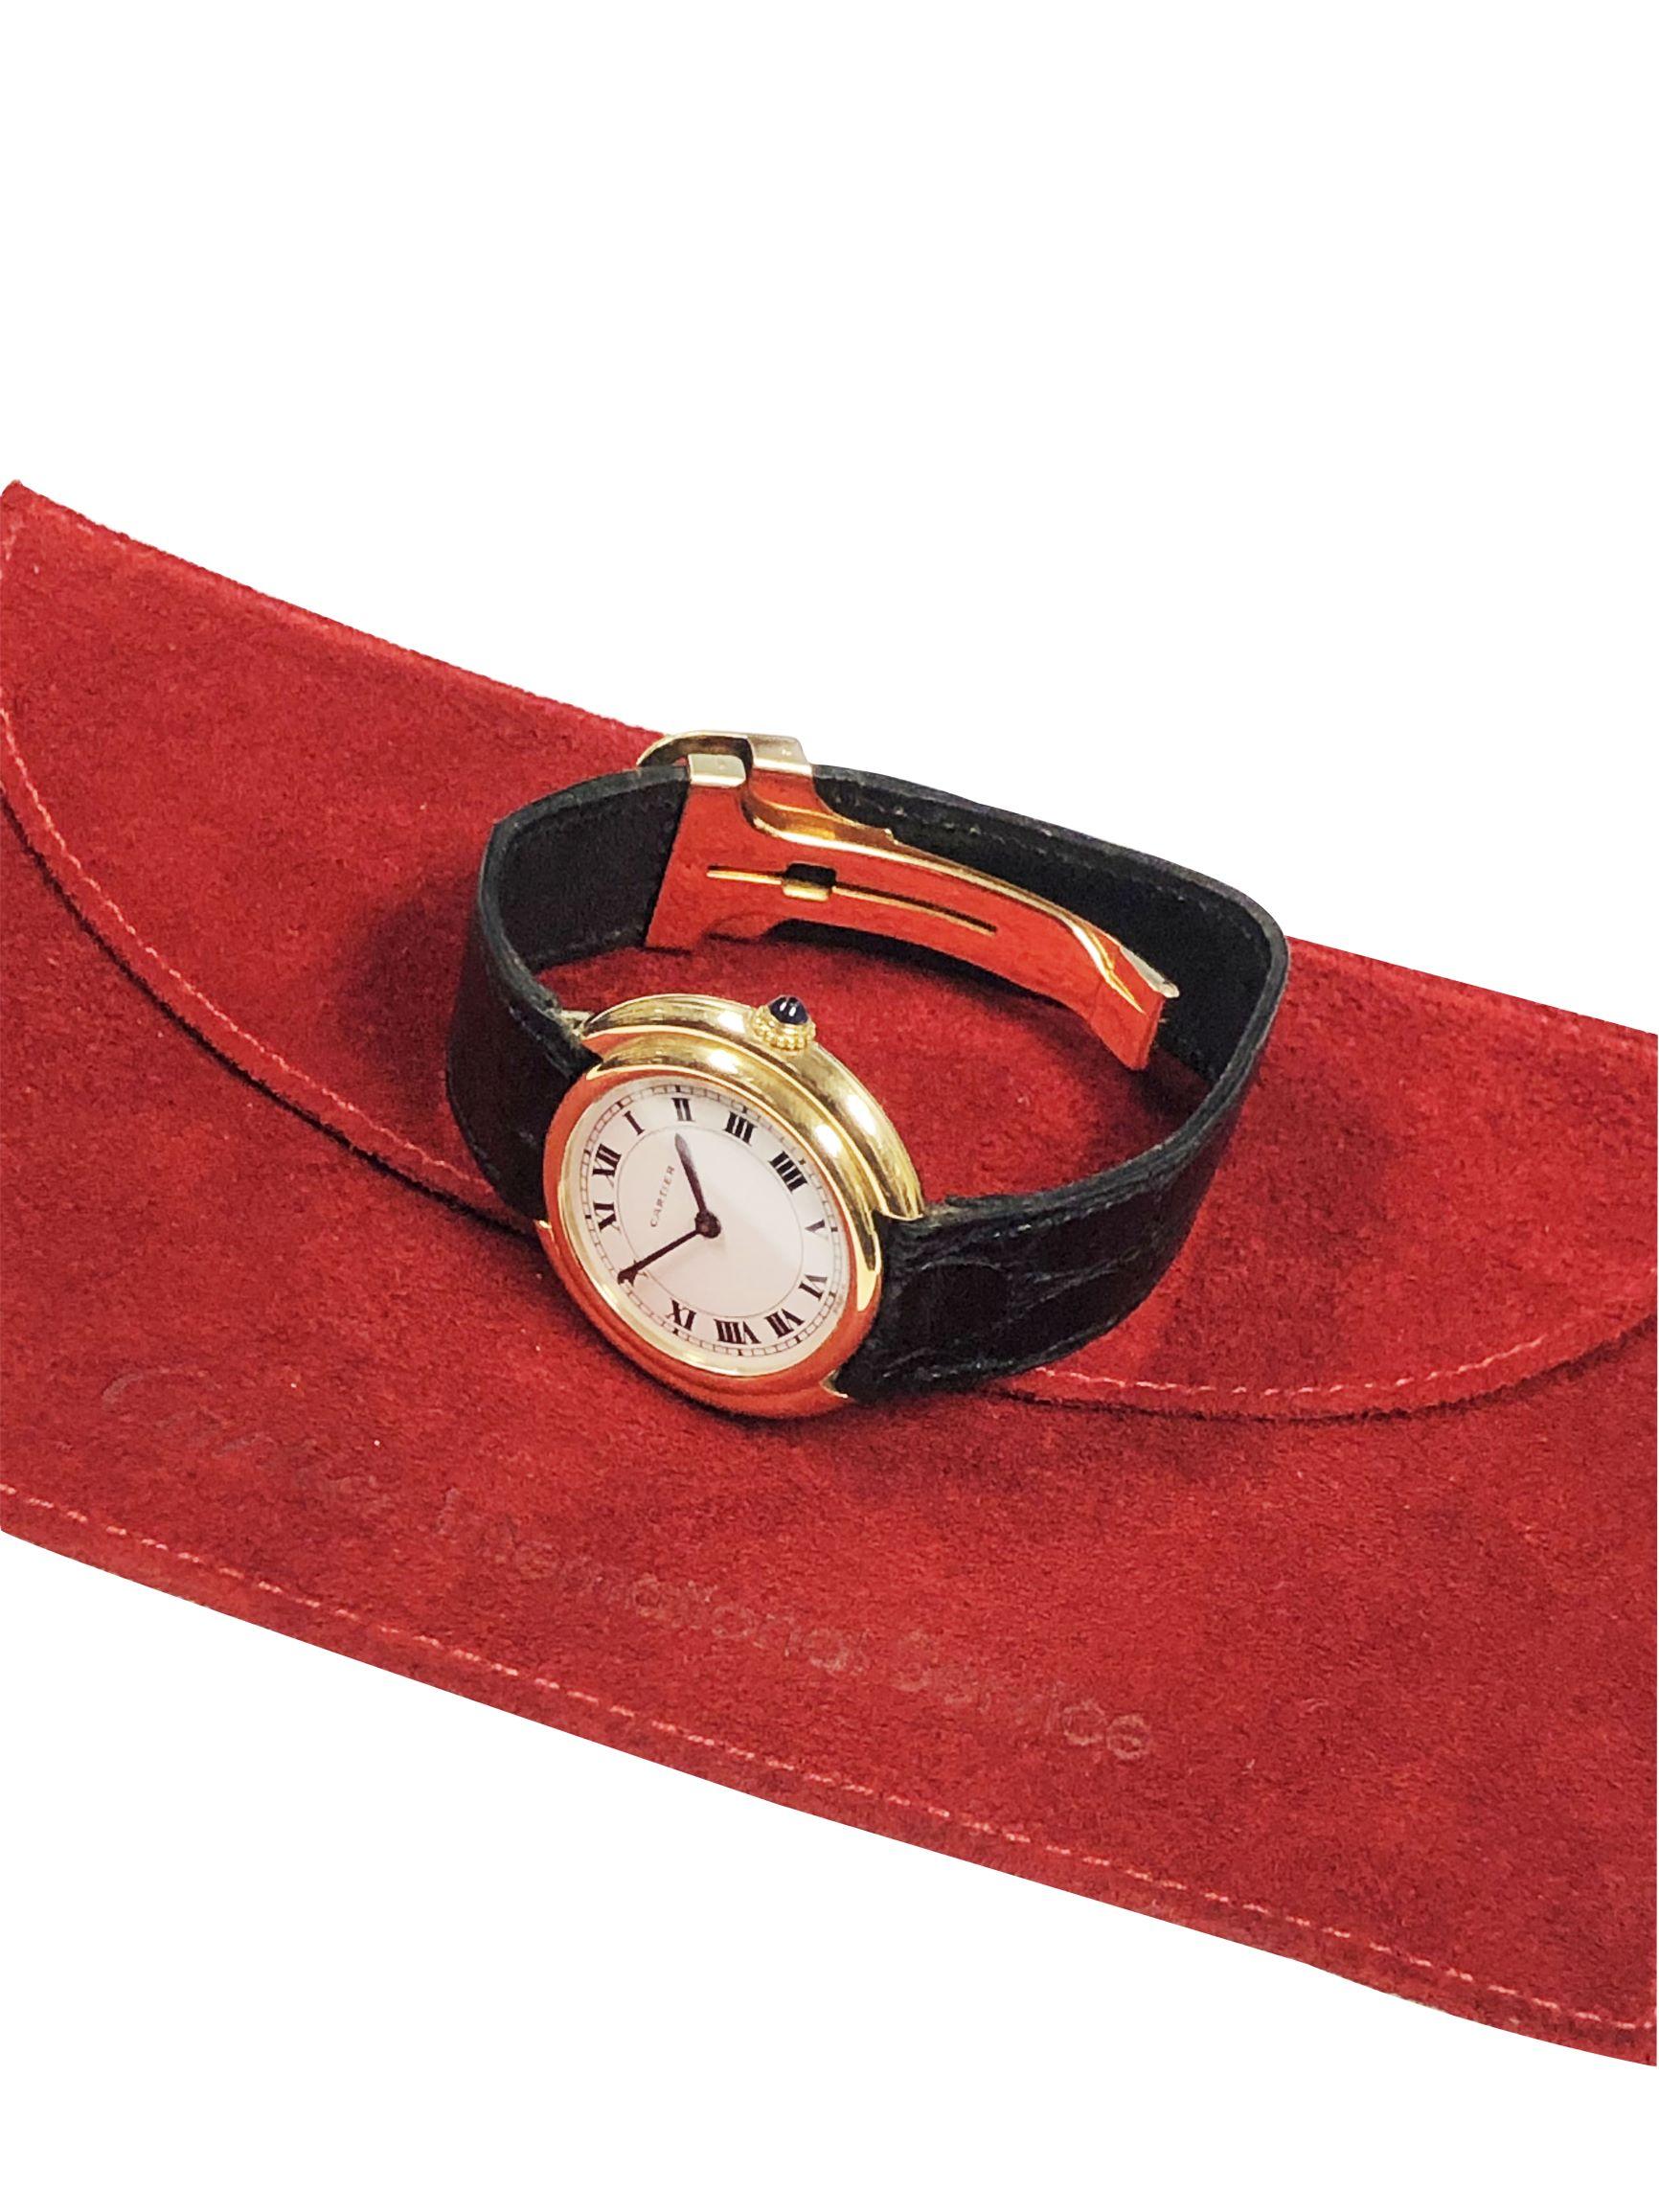 Cartier Paris Vintage Ellipse Yellow Gold Mechanical Wristwatch 1